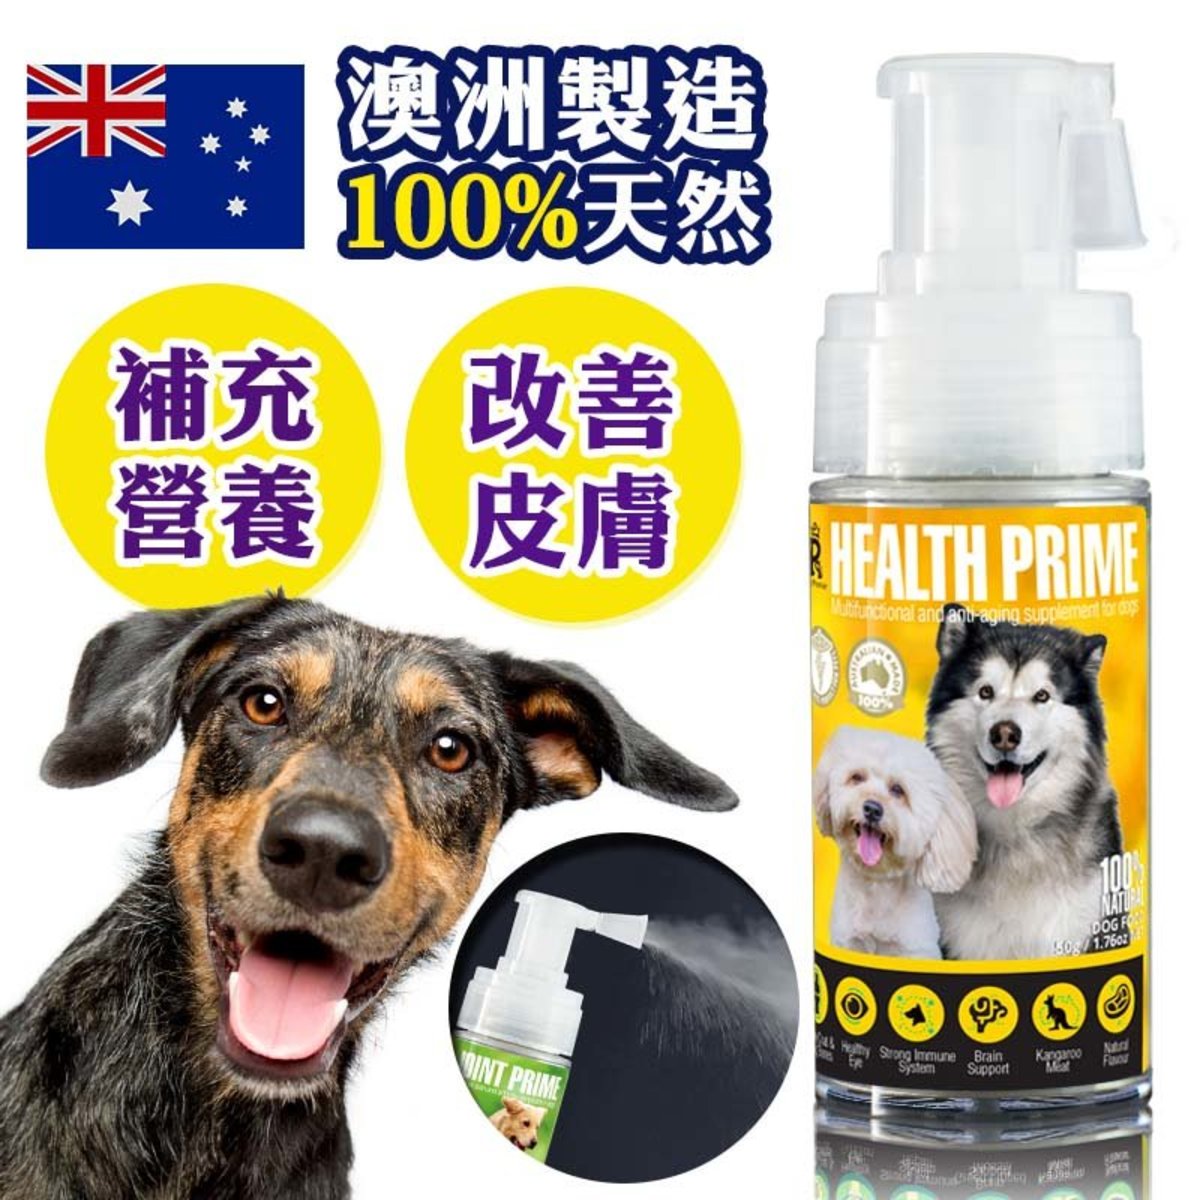 澳洲寵物神仙粉粉沫噴劑 - 營養神仙粉 - Health Prime 1支裝 (狗用) -- 買4支或以上即送贈品關節神仙粉一支